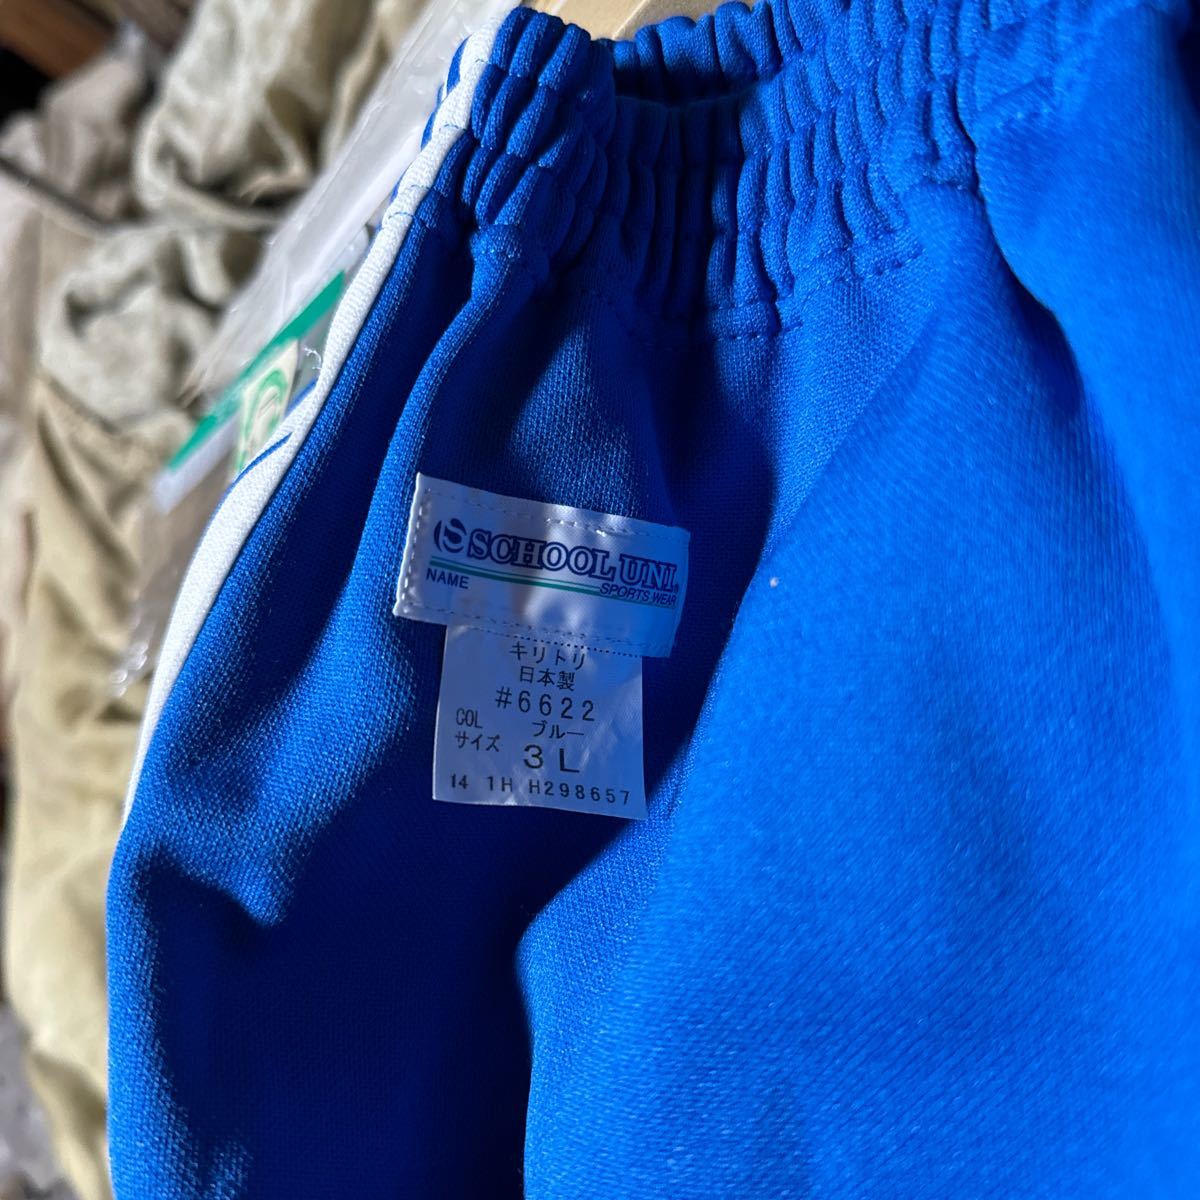  переговоры приветствуется [ новый товар ]brumabruma- спортивная форма спорт одежда школьная форма форма School Uni school Uni синий голубой 3L размер спортивная форма костюмированная игра #6622